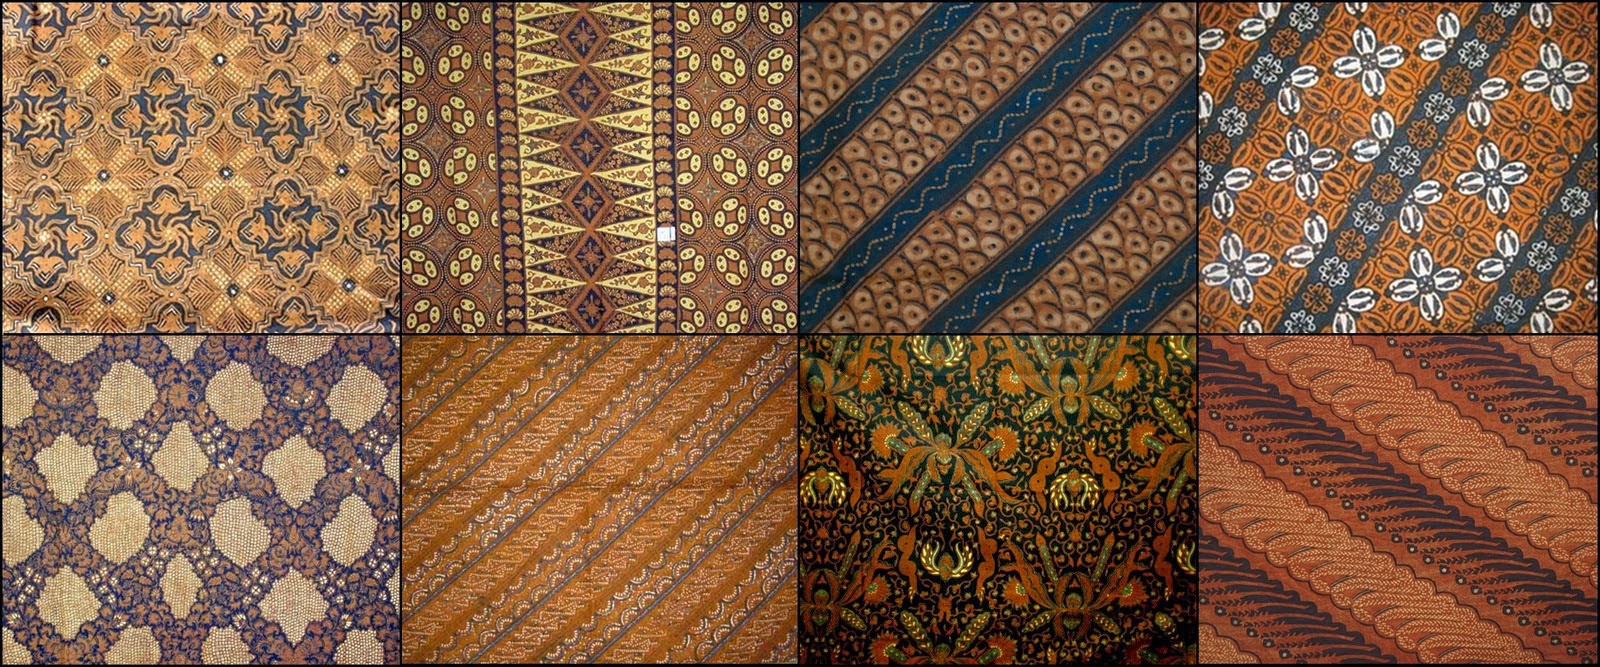 kesenian daerah: batik jawa tengah